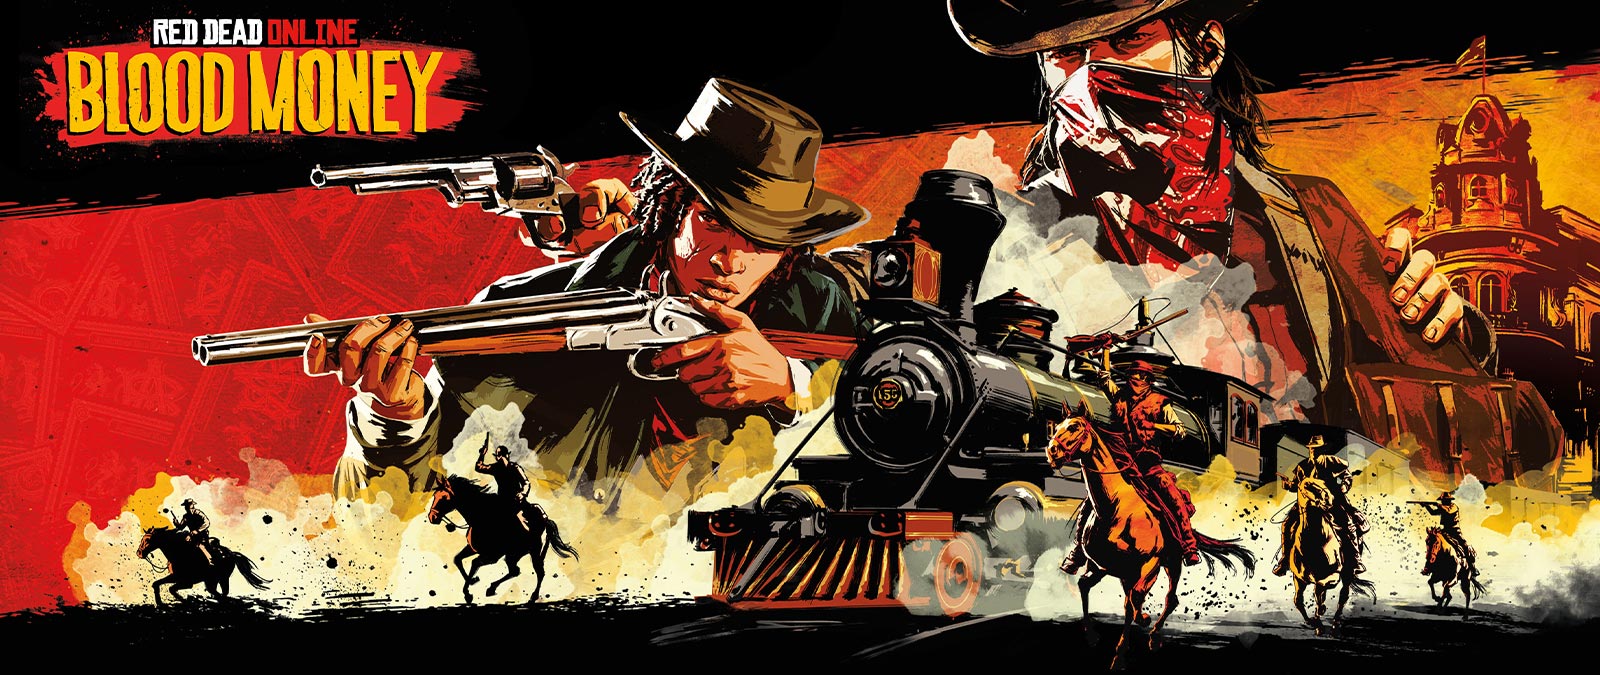 Red Dead Online: Blood Money: Blood Money, fegyveres banditák lóháton megtámadnak egy vonatot.